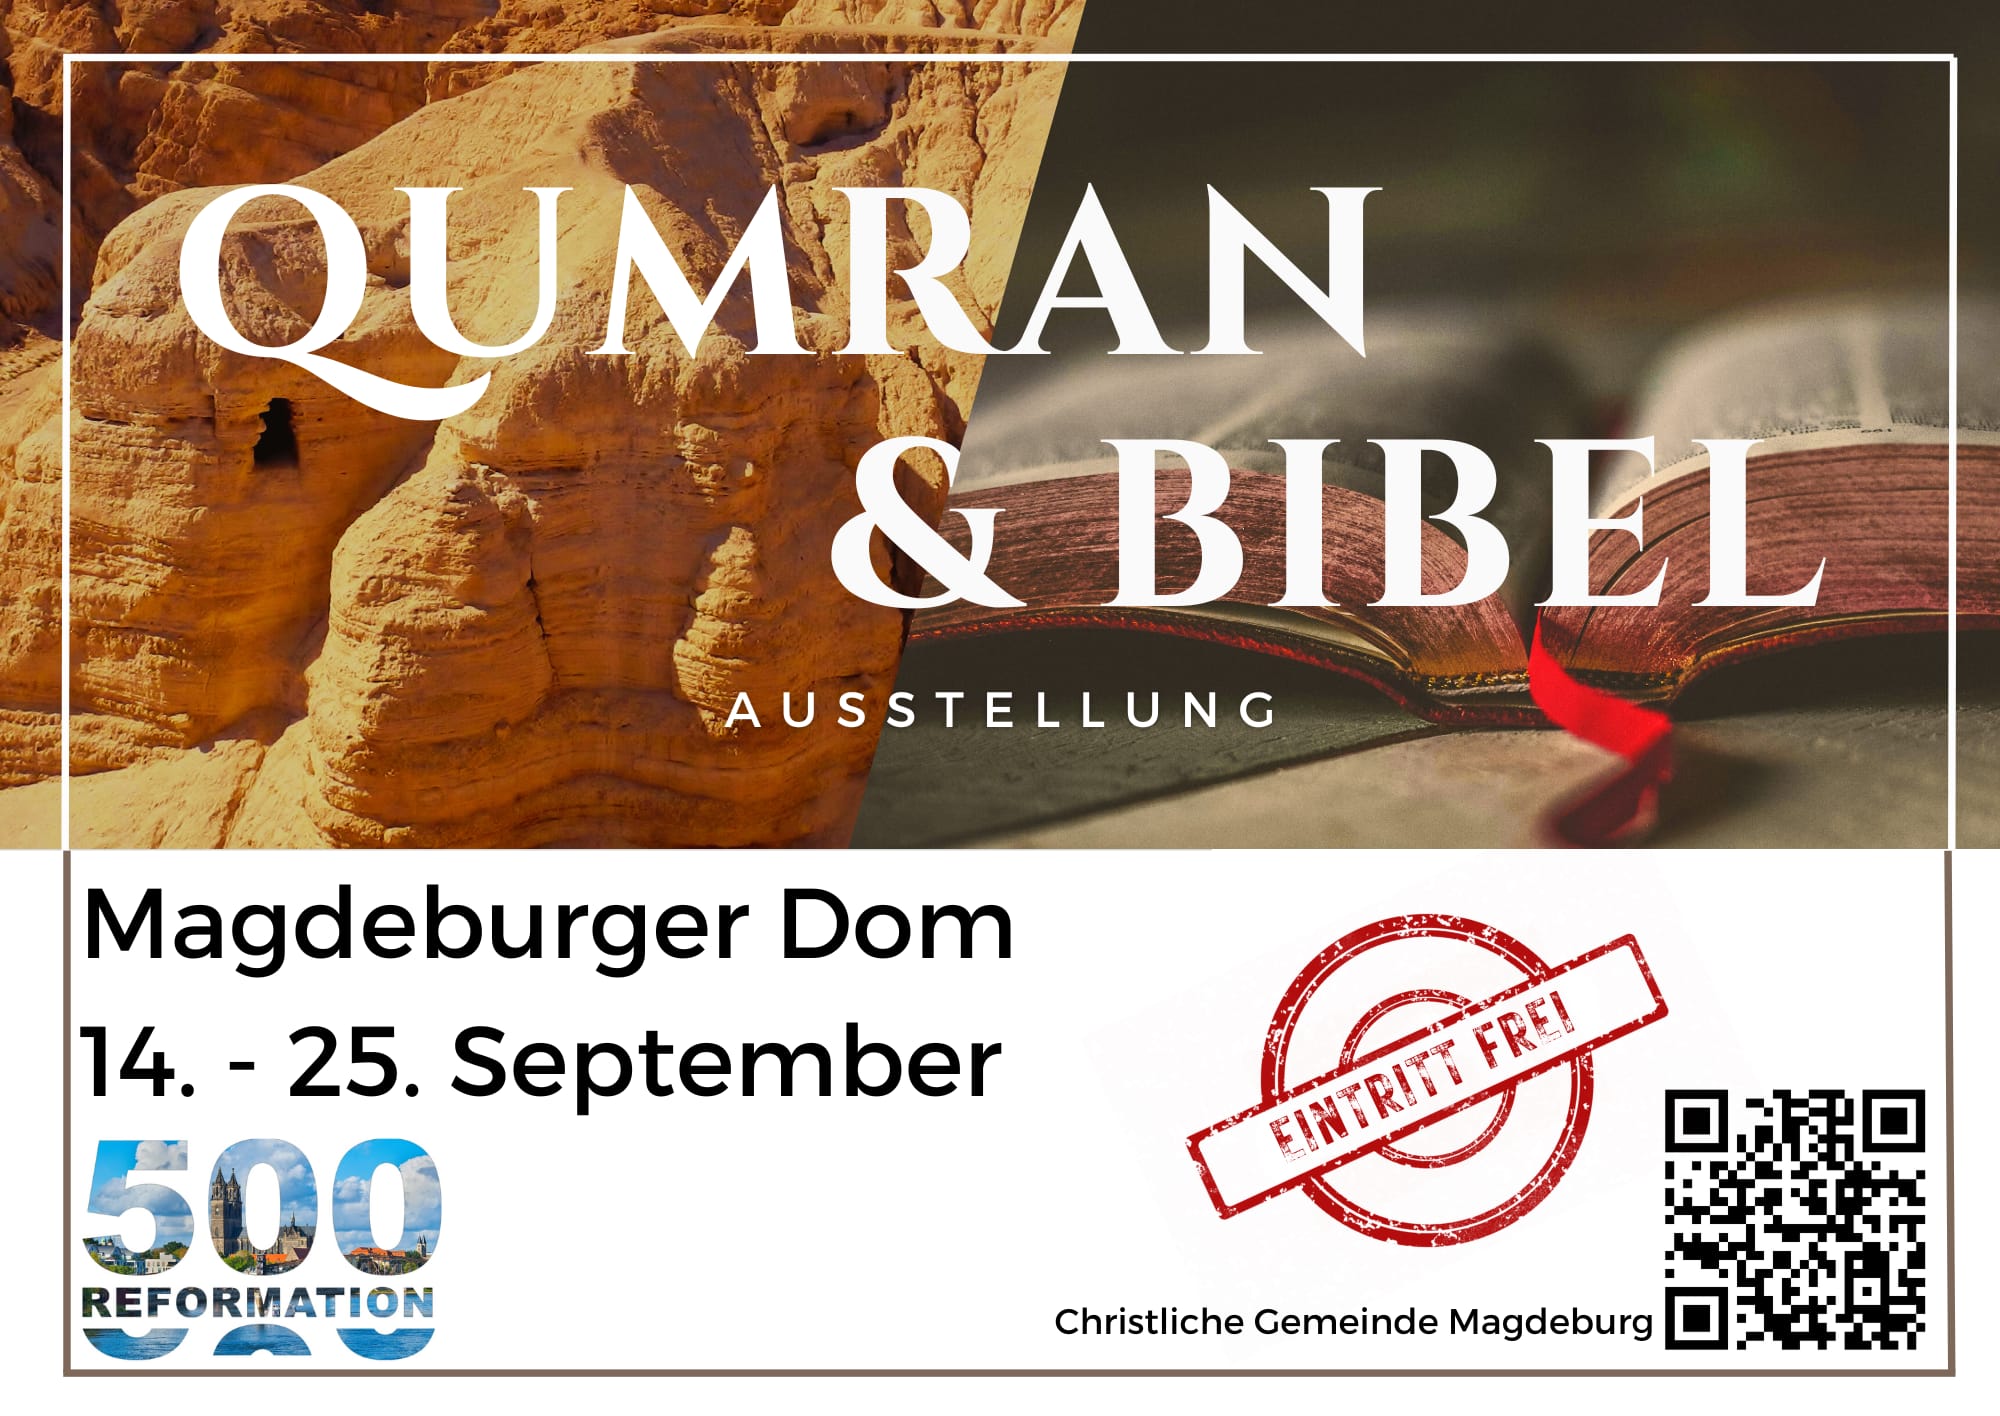 Qumran & Bibel Ausstellung Magdeburger Dom 14. - 25 September